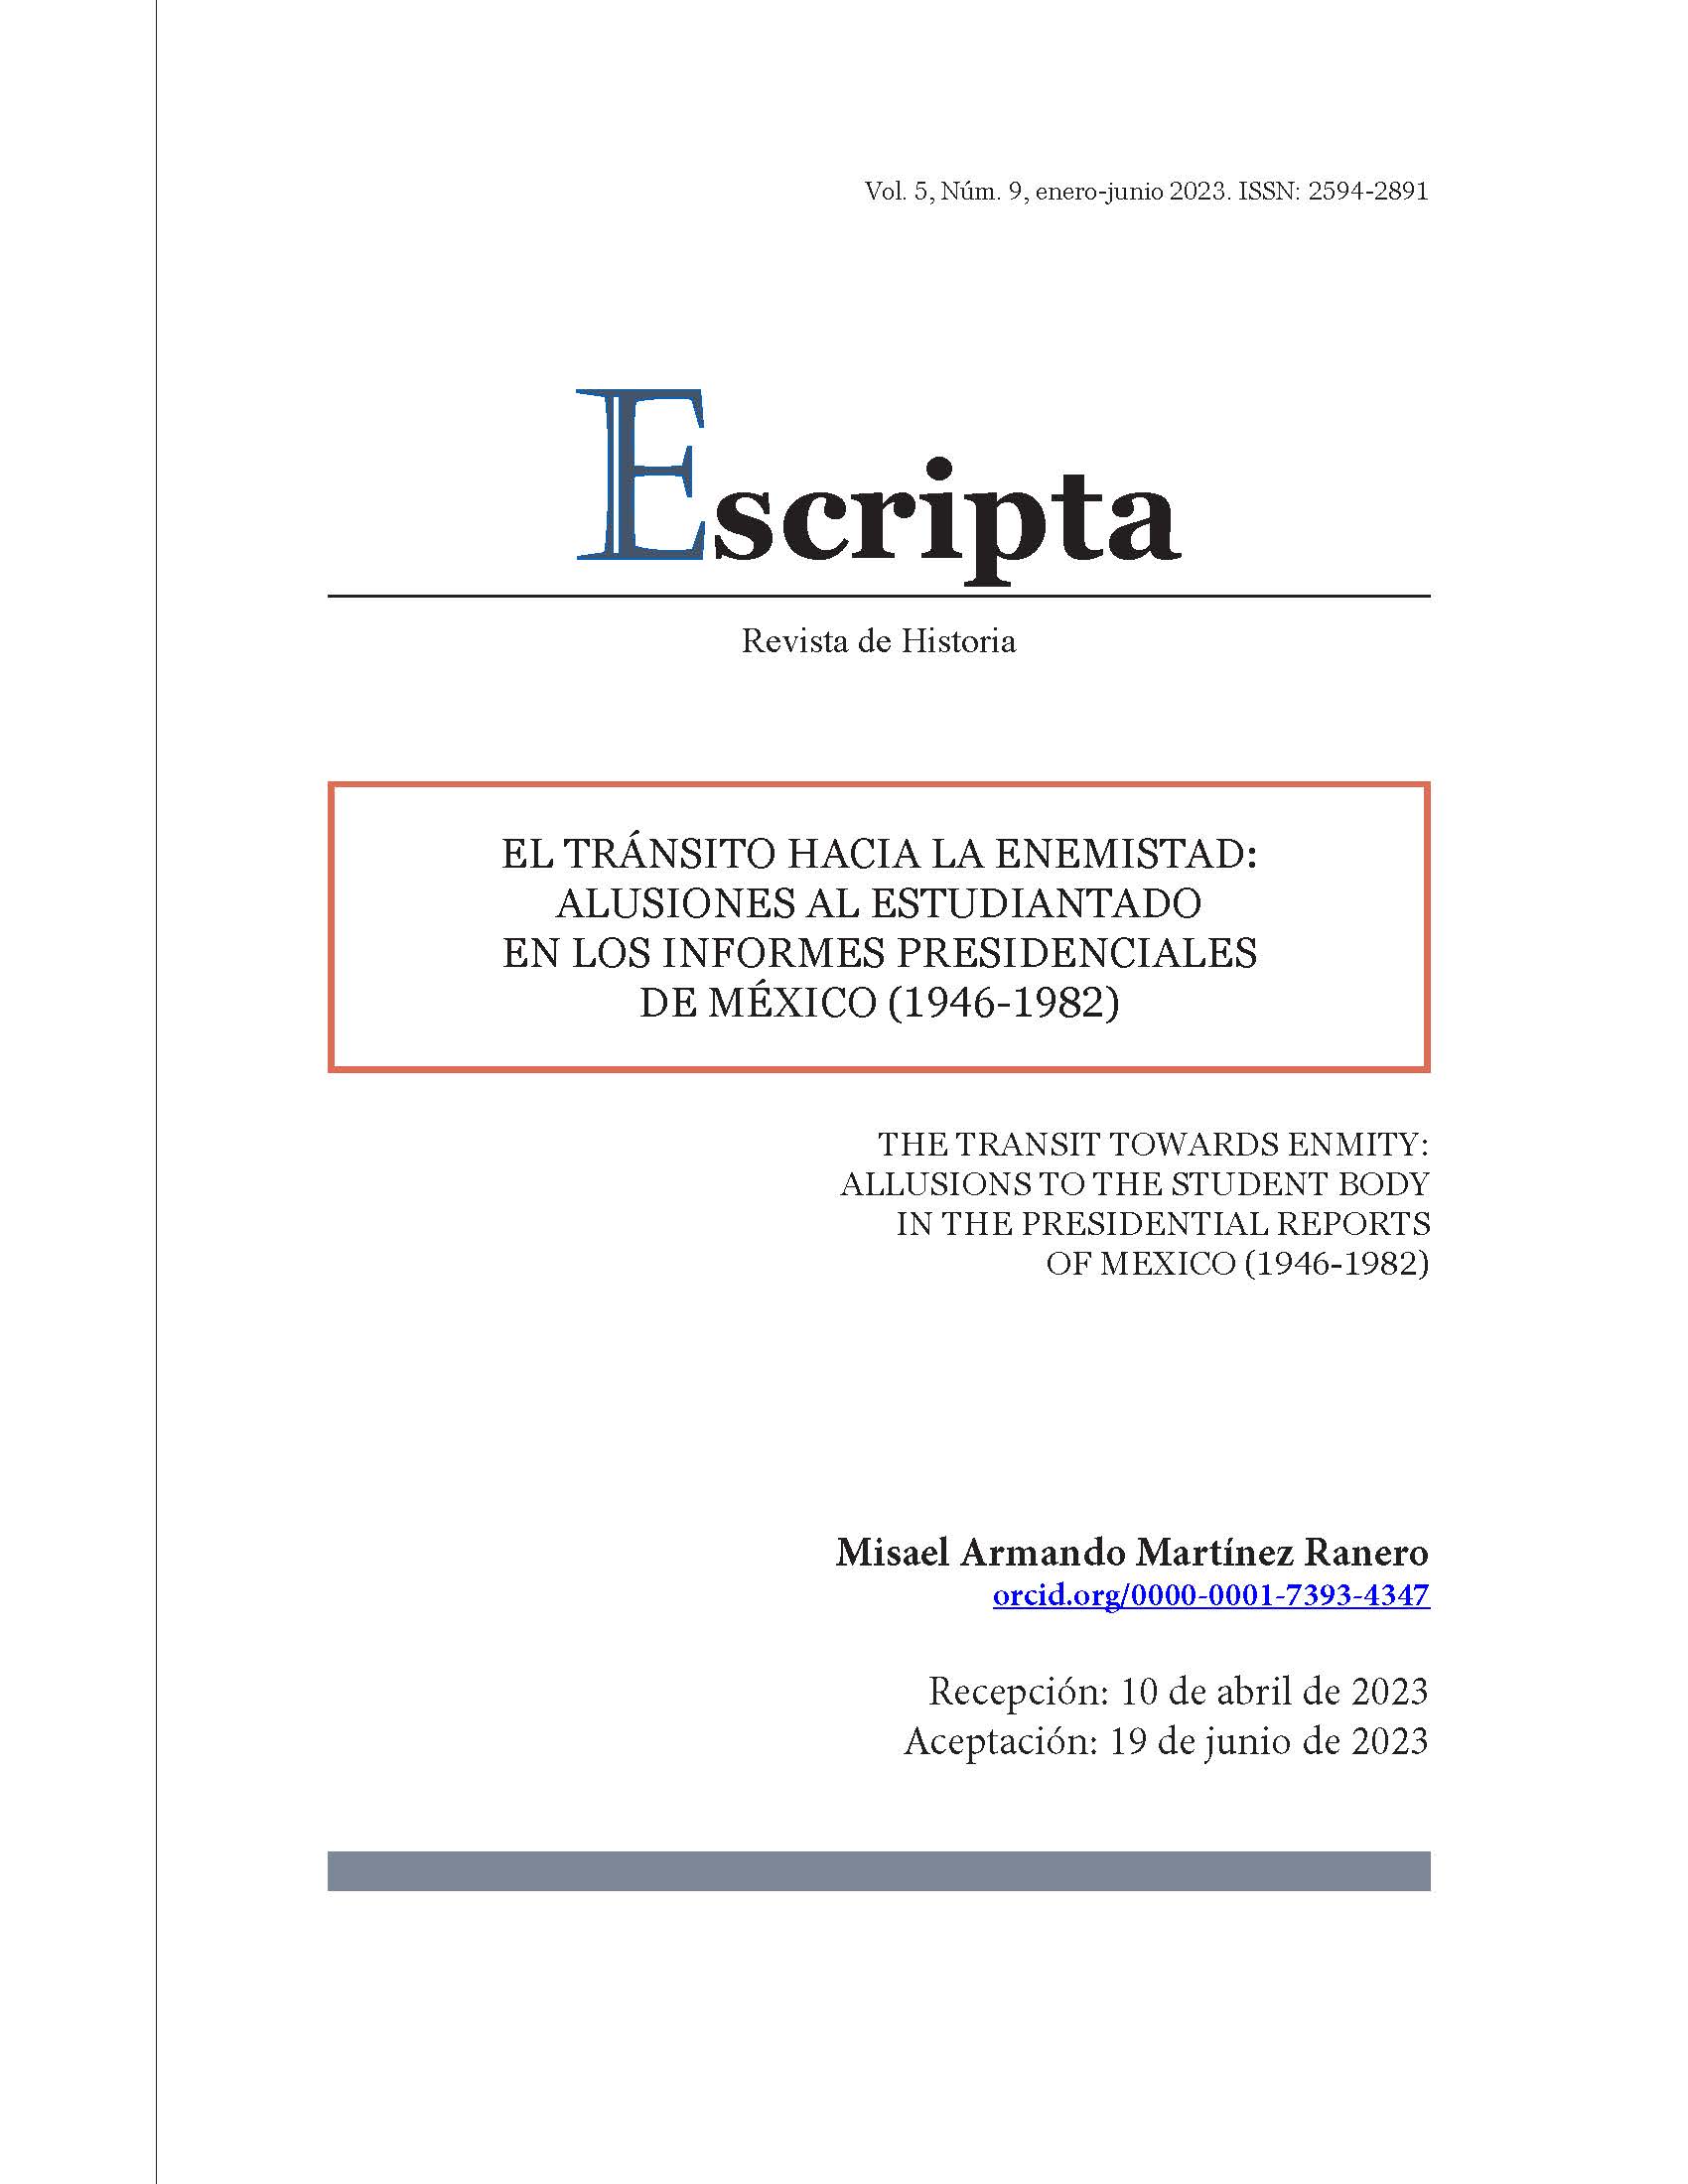 El tránsito hacia la enemistad: alusiones al estudiantado en los informes presidenciales de México (1946-1982)